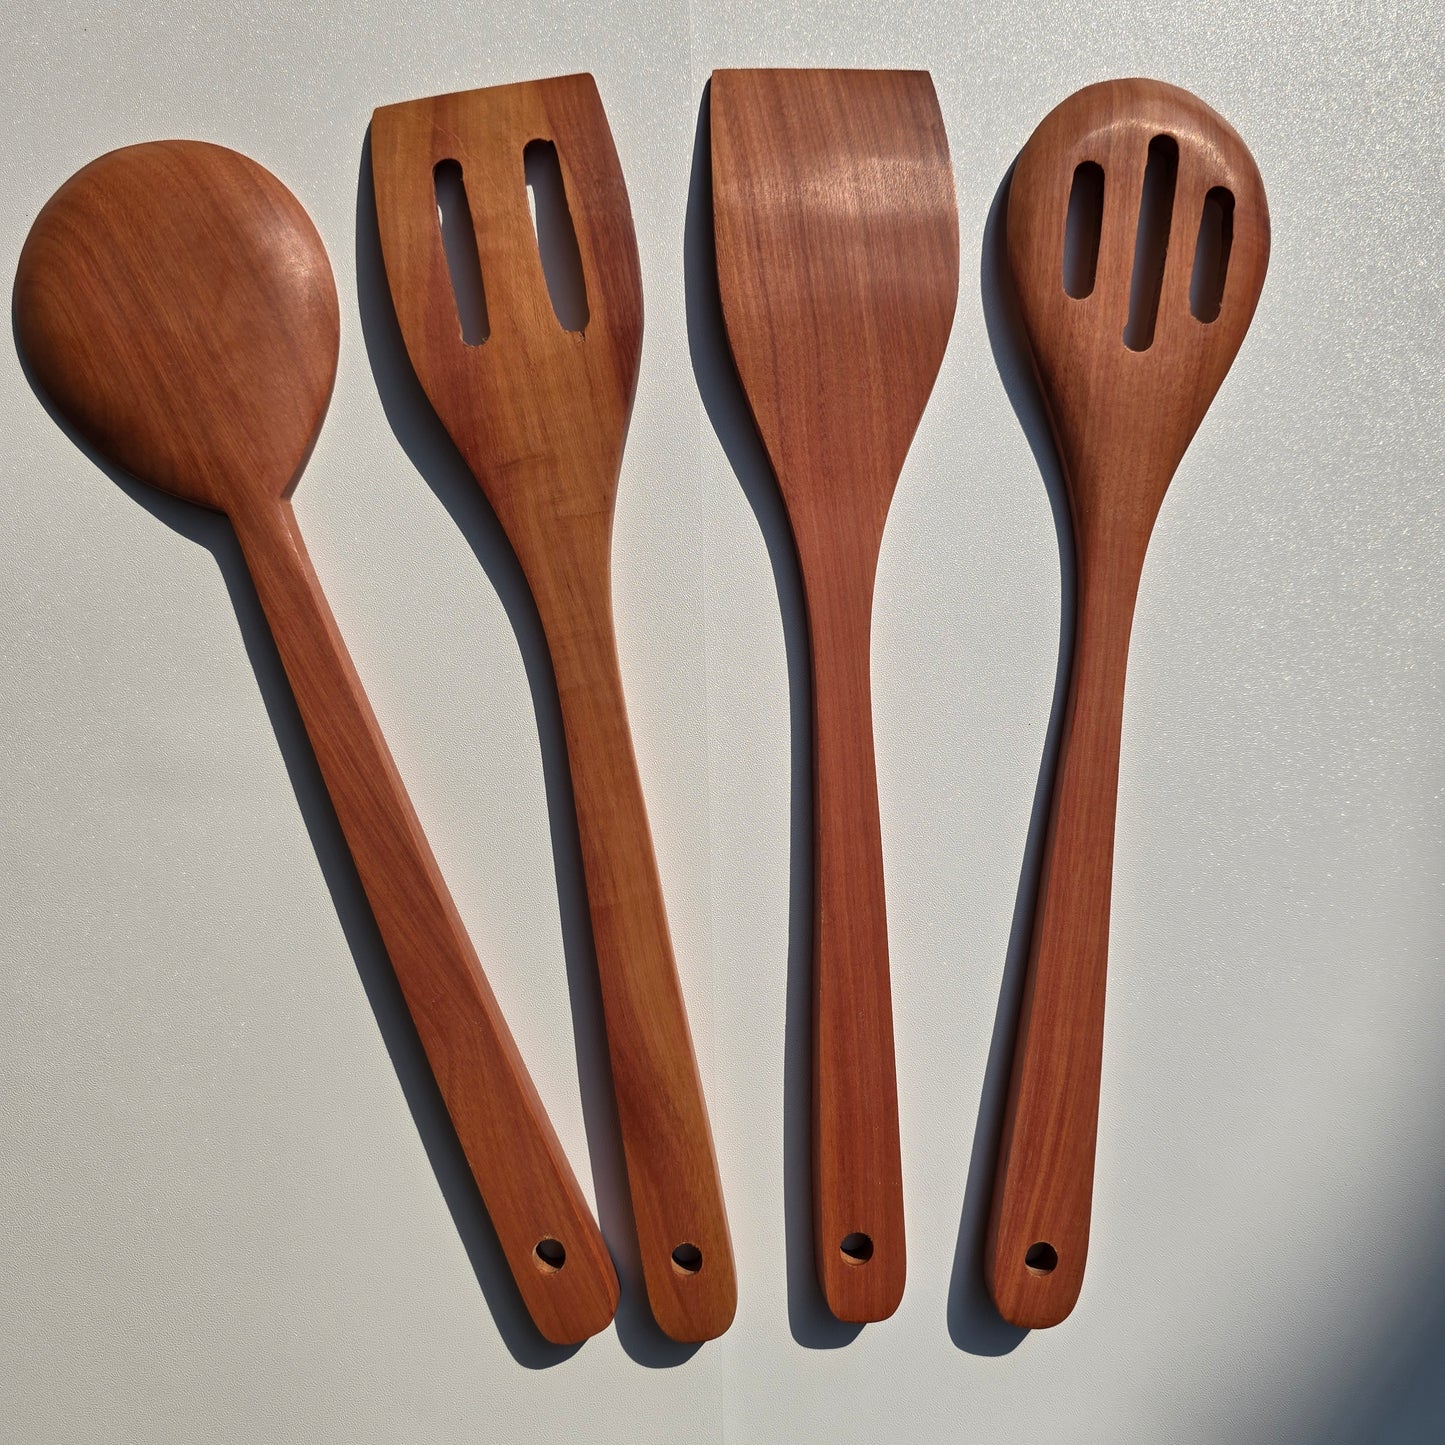 Wooden Teak Spatula Set of 4pcs